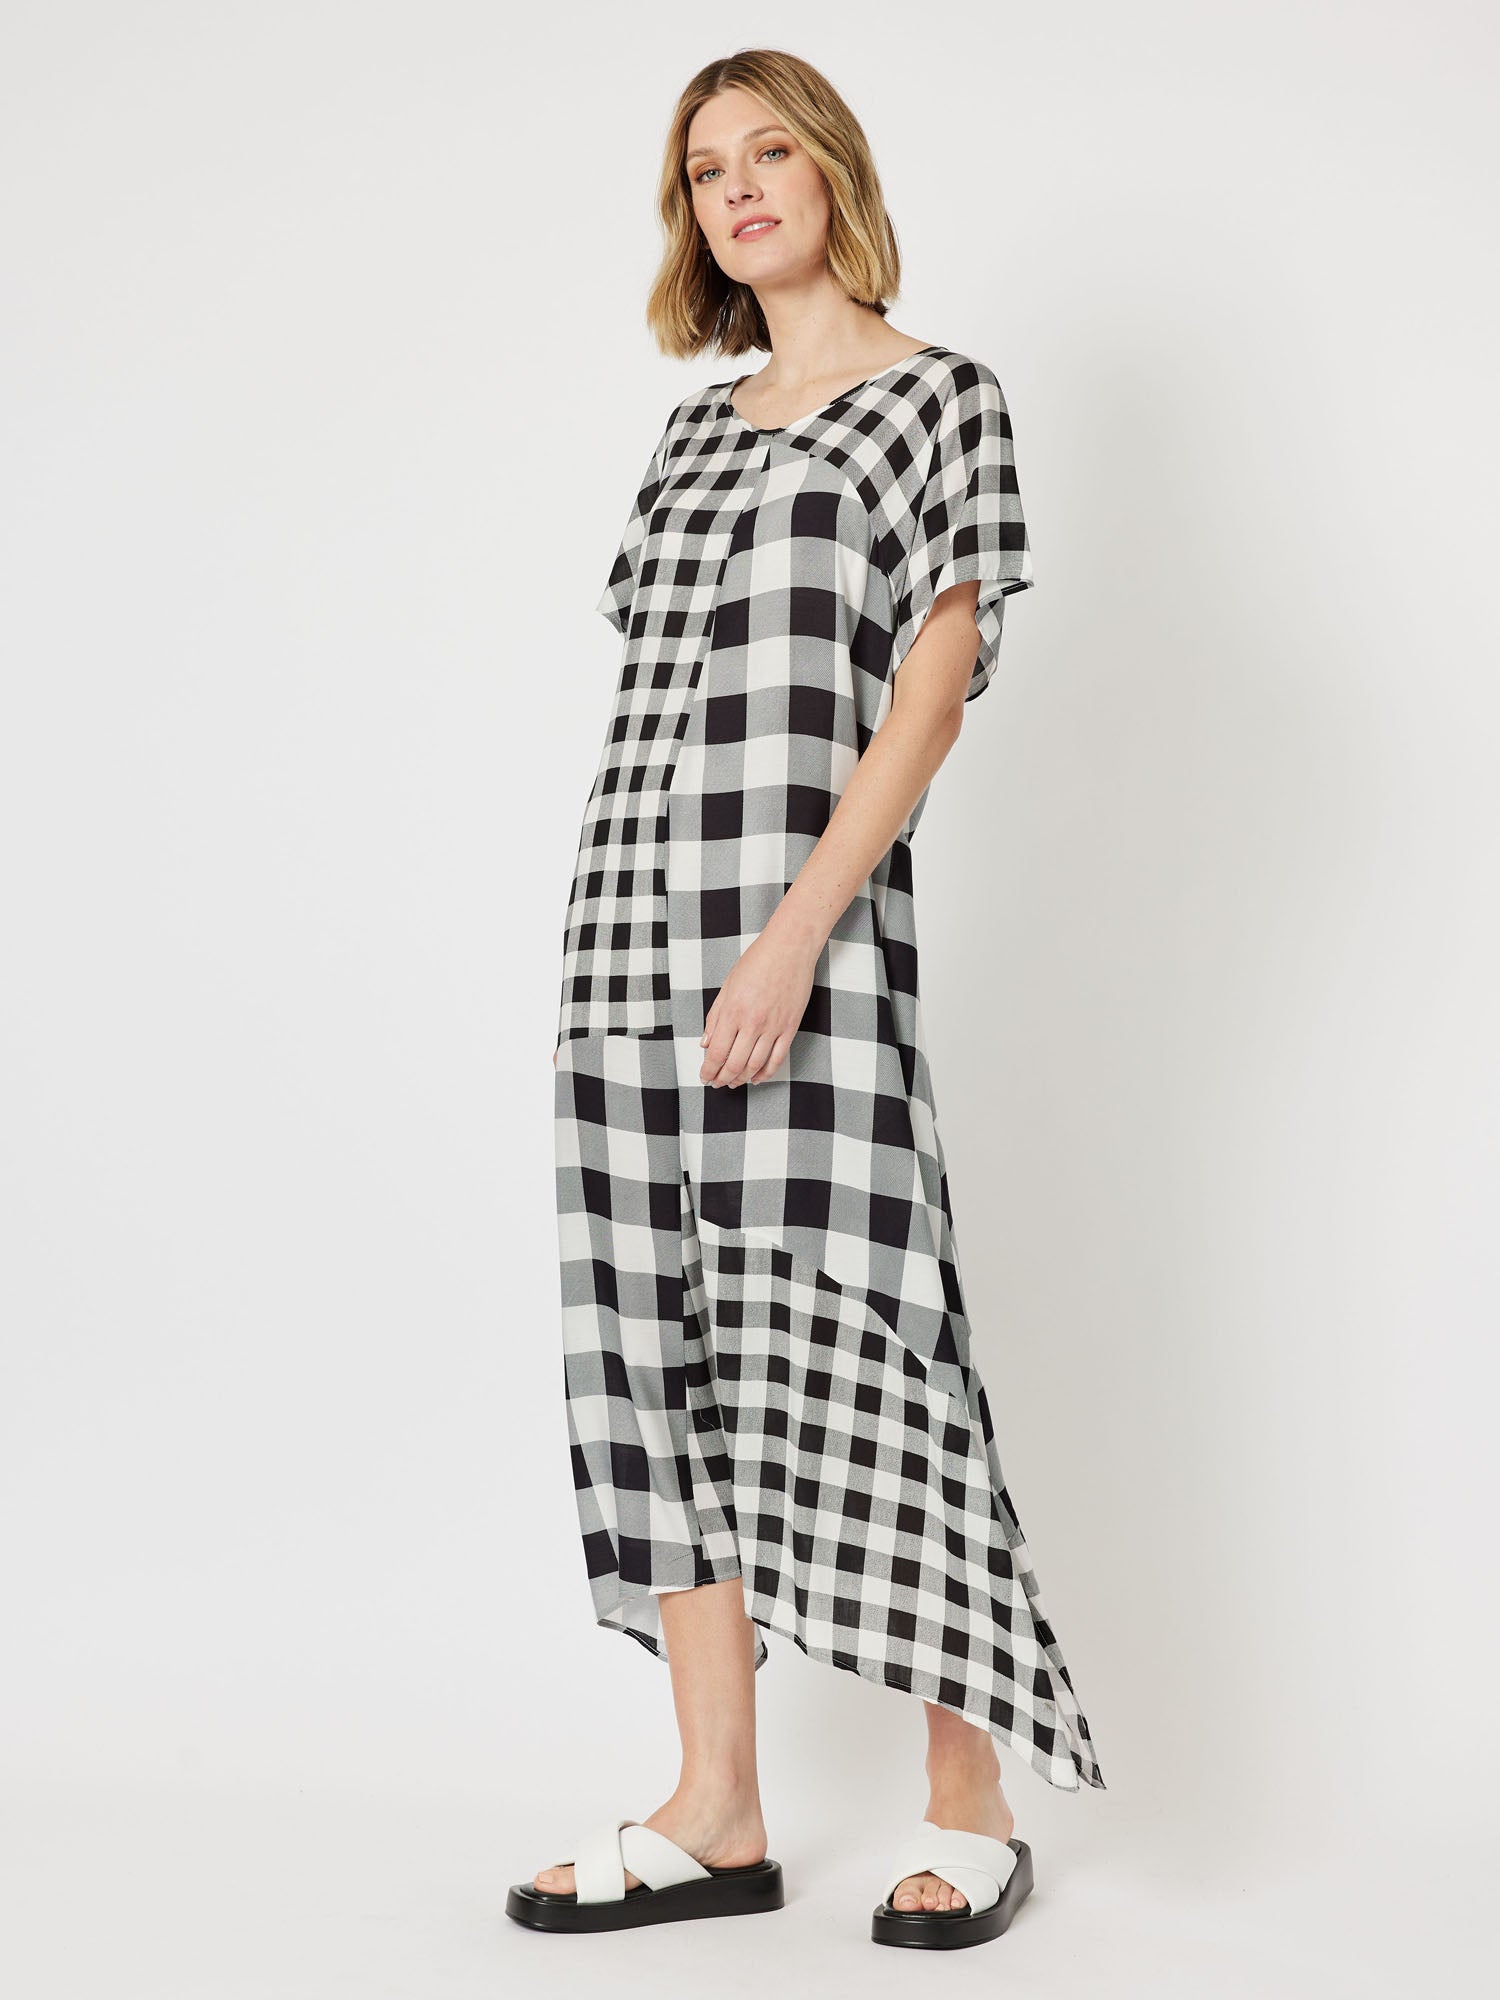 Medley Spliced Check Short Sleeve Long Dress - Black/White